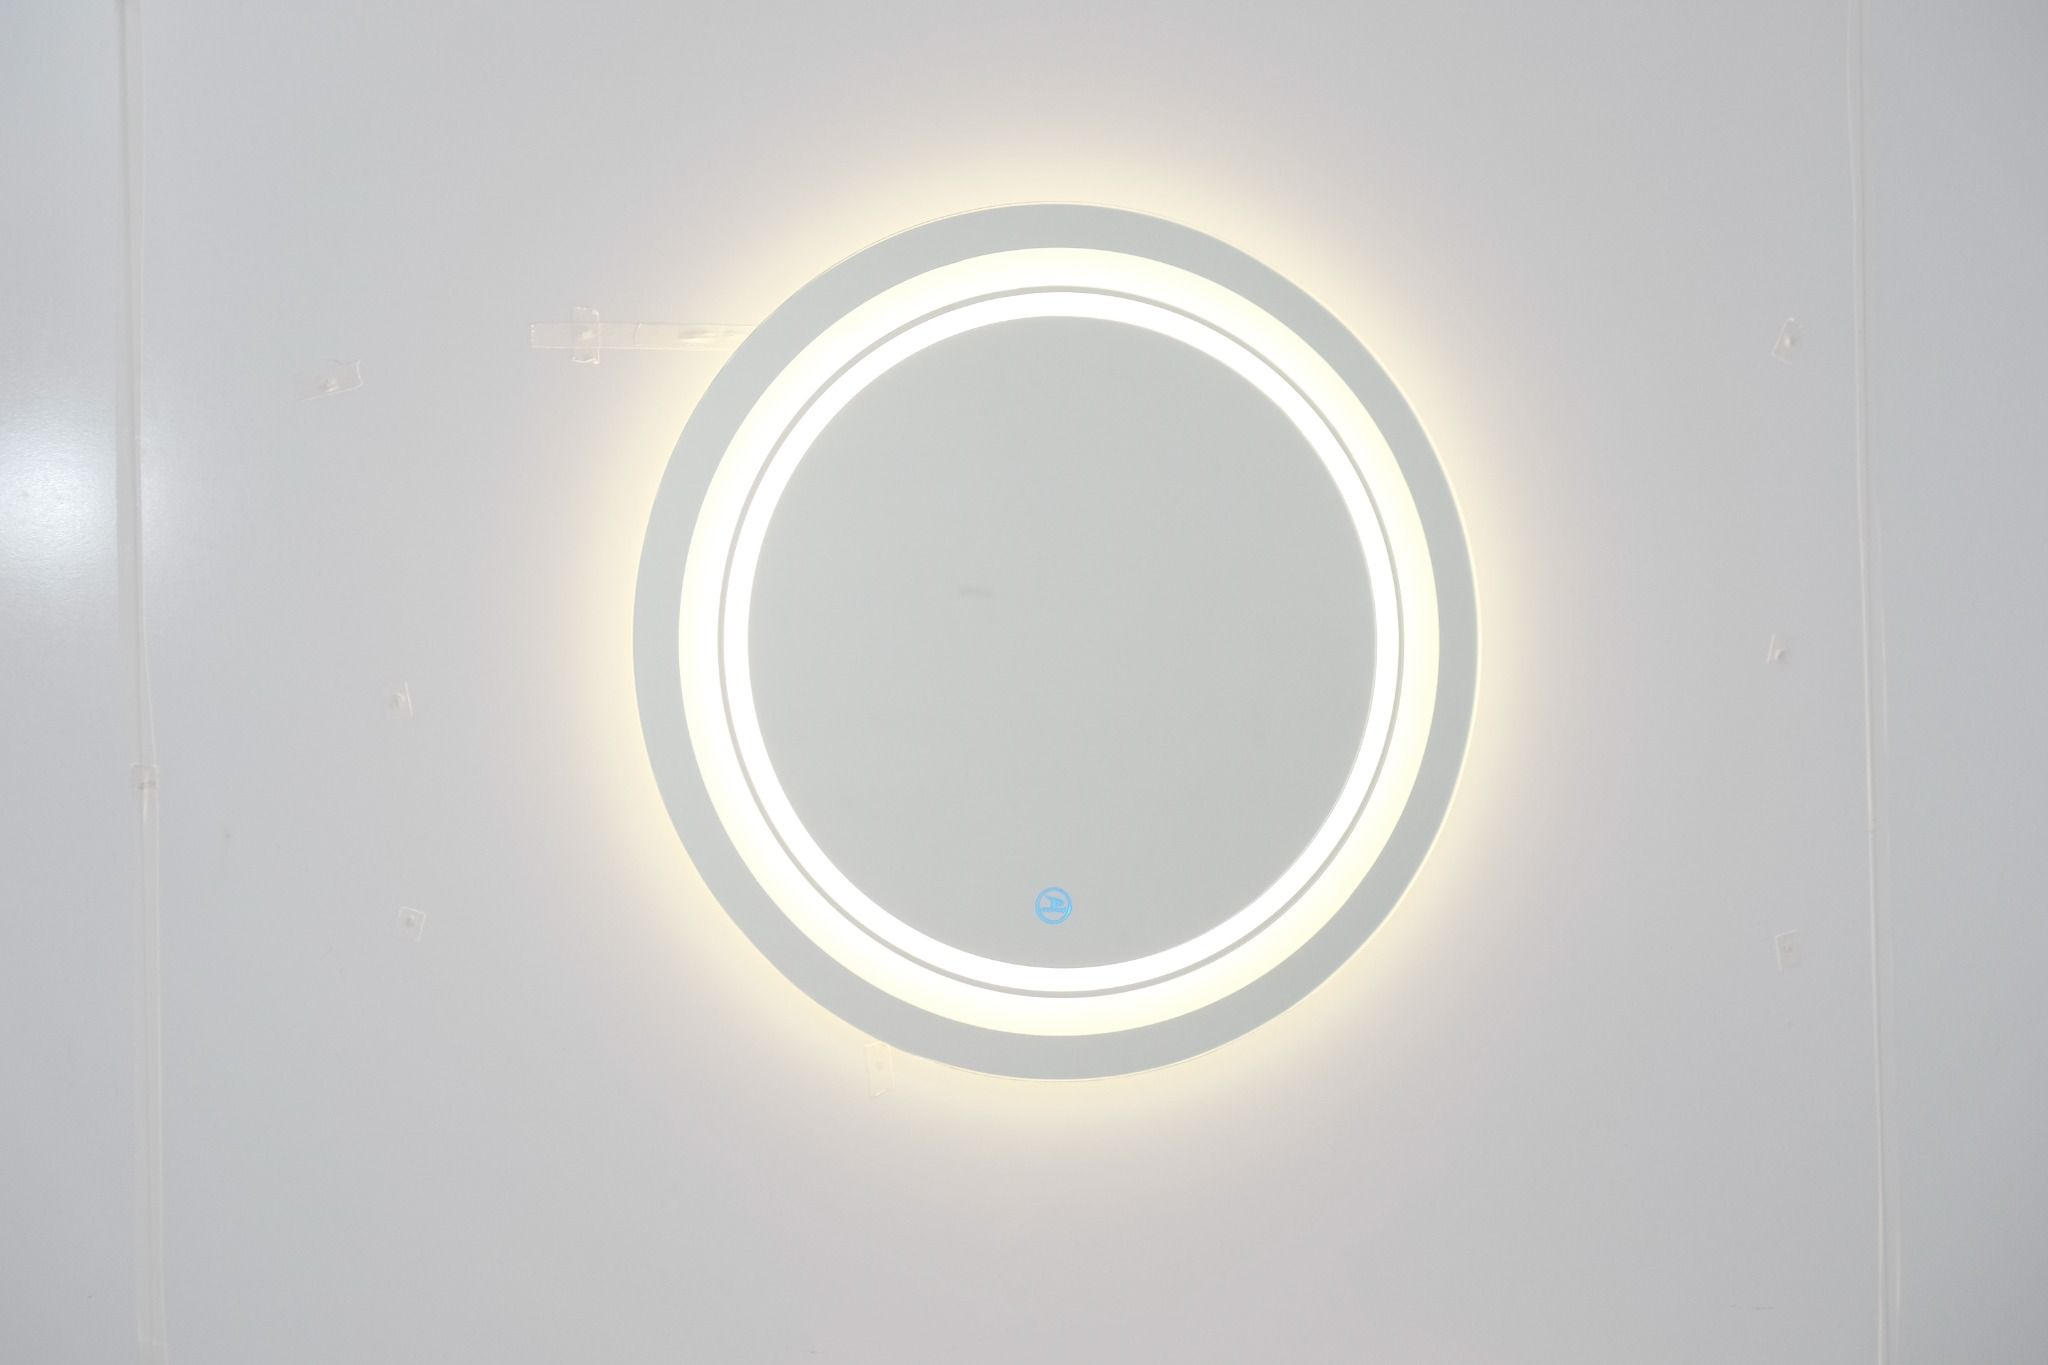  Gương đèn tròn cảm ứng cao cấp Hoàng Thiện GD 3306-8 